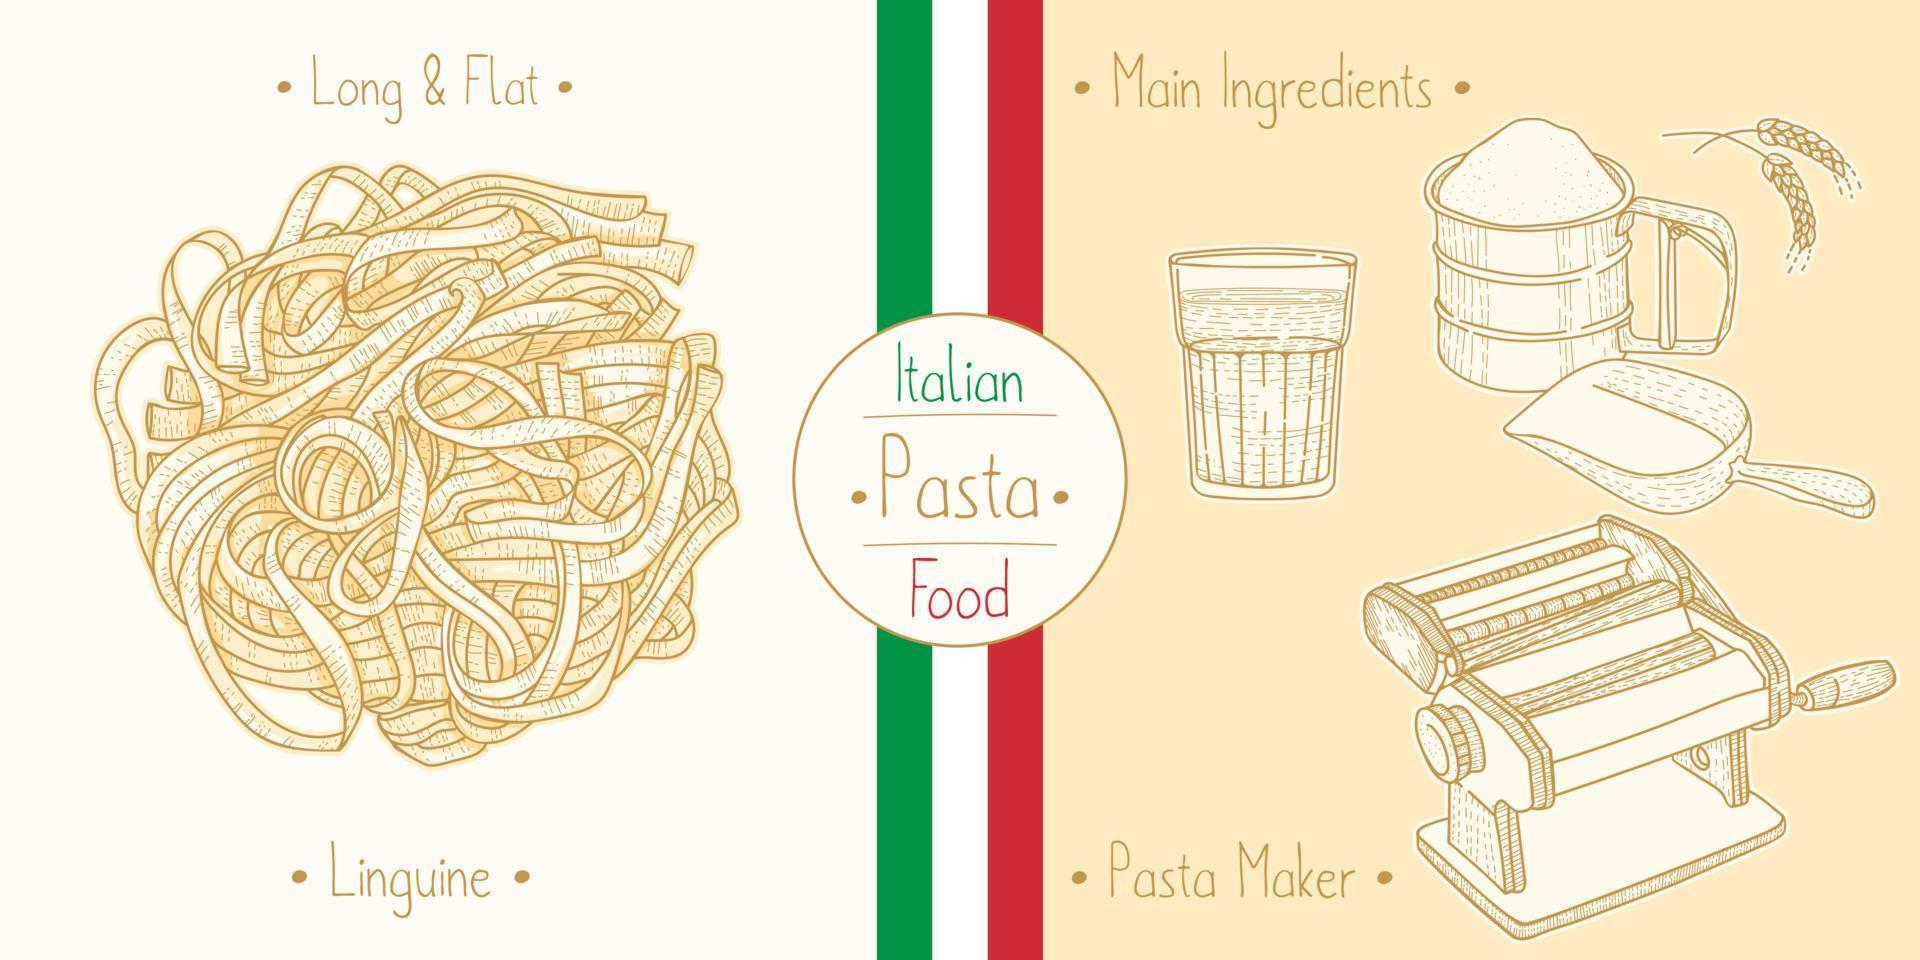 Italiaans eten linguine pasta en hoofdingrediënten en apparatuur voor pastamakers koken, illustratie schetsen in vintage stijl vector